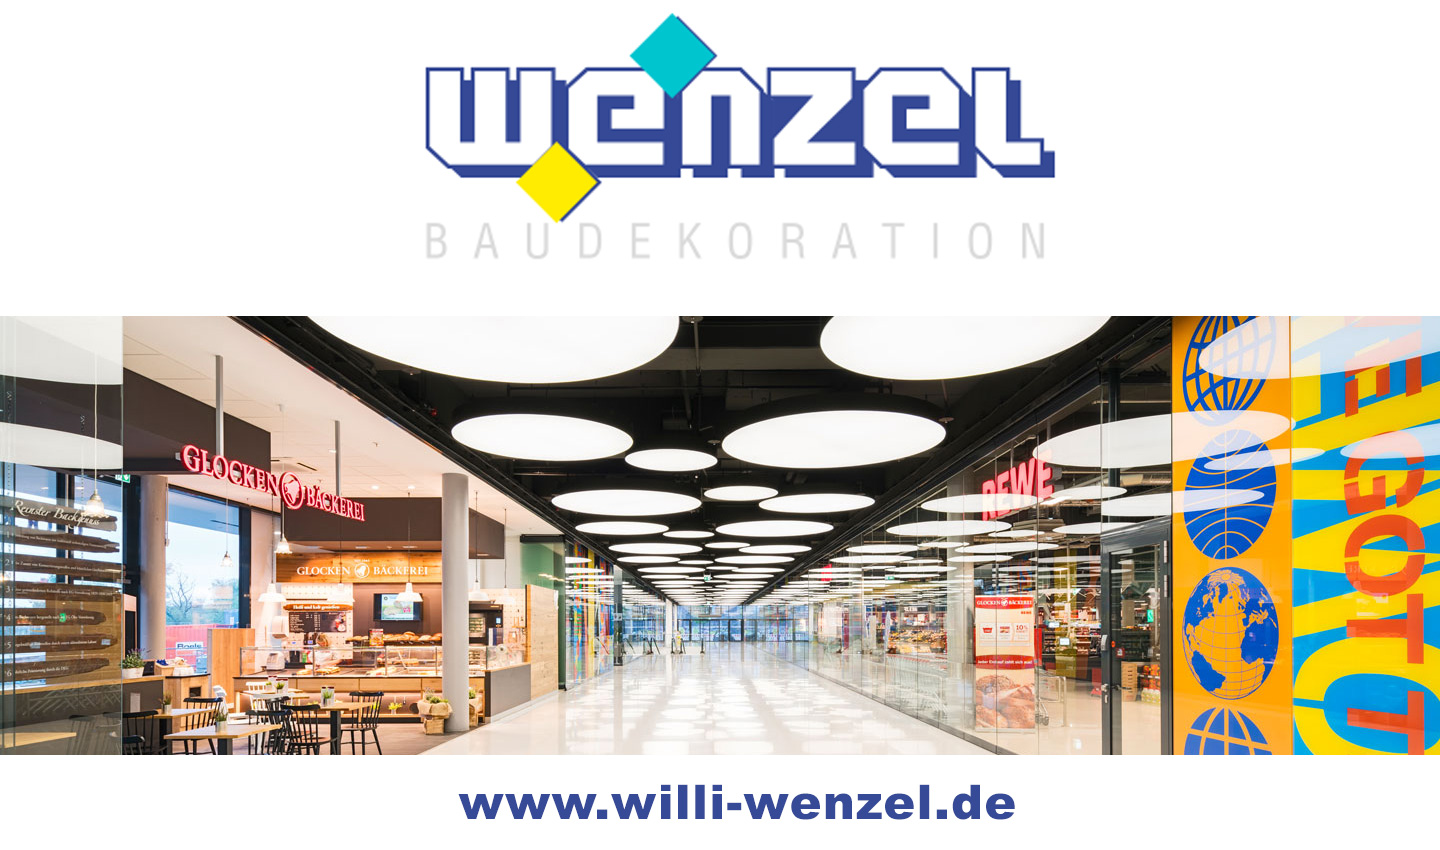 www.willi-wenzel.de